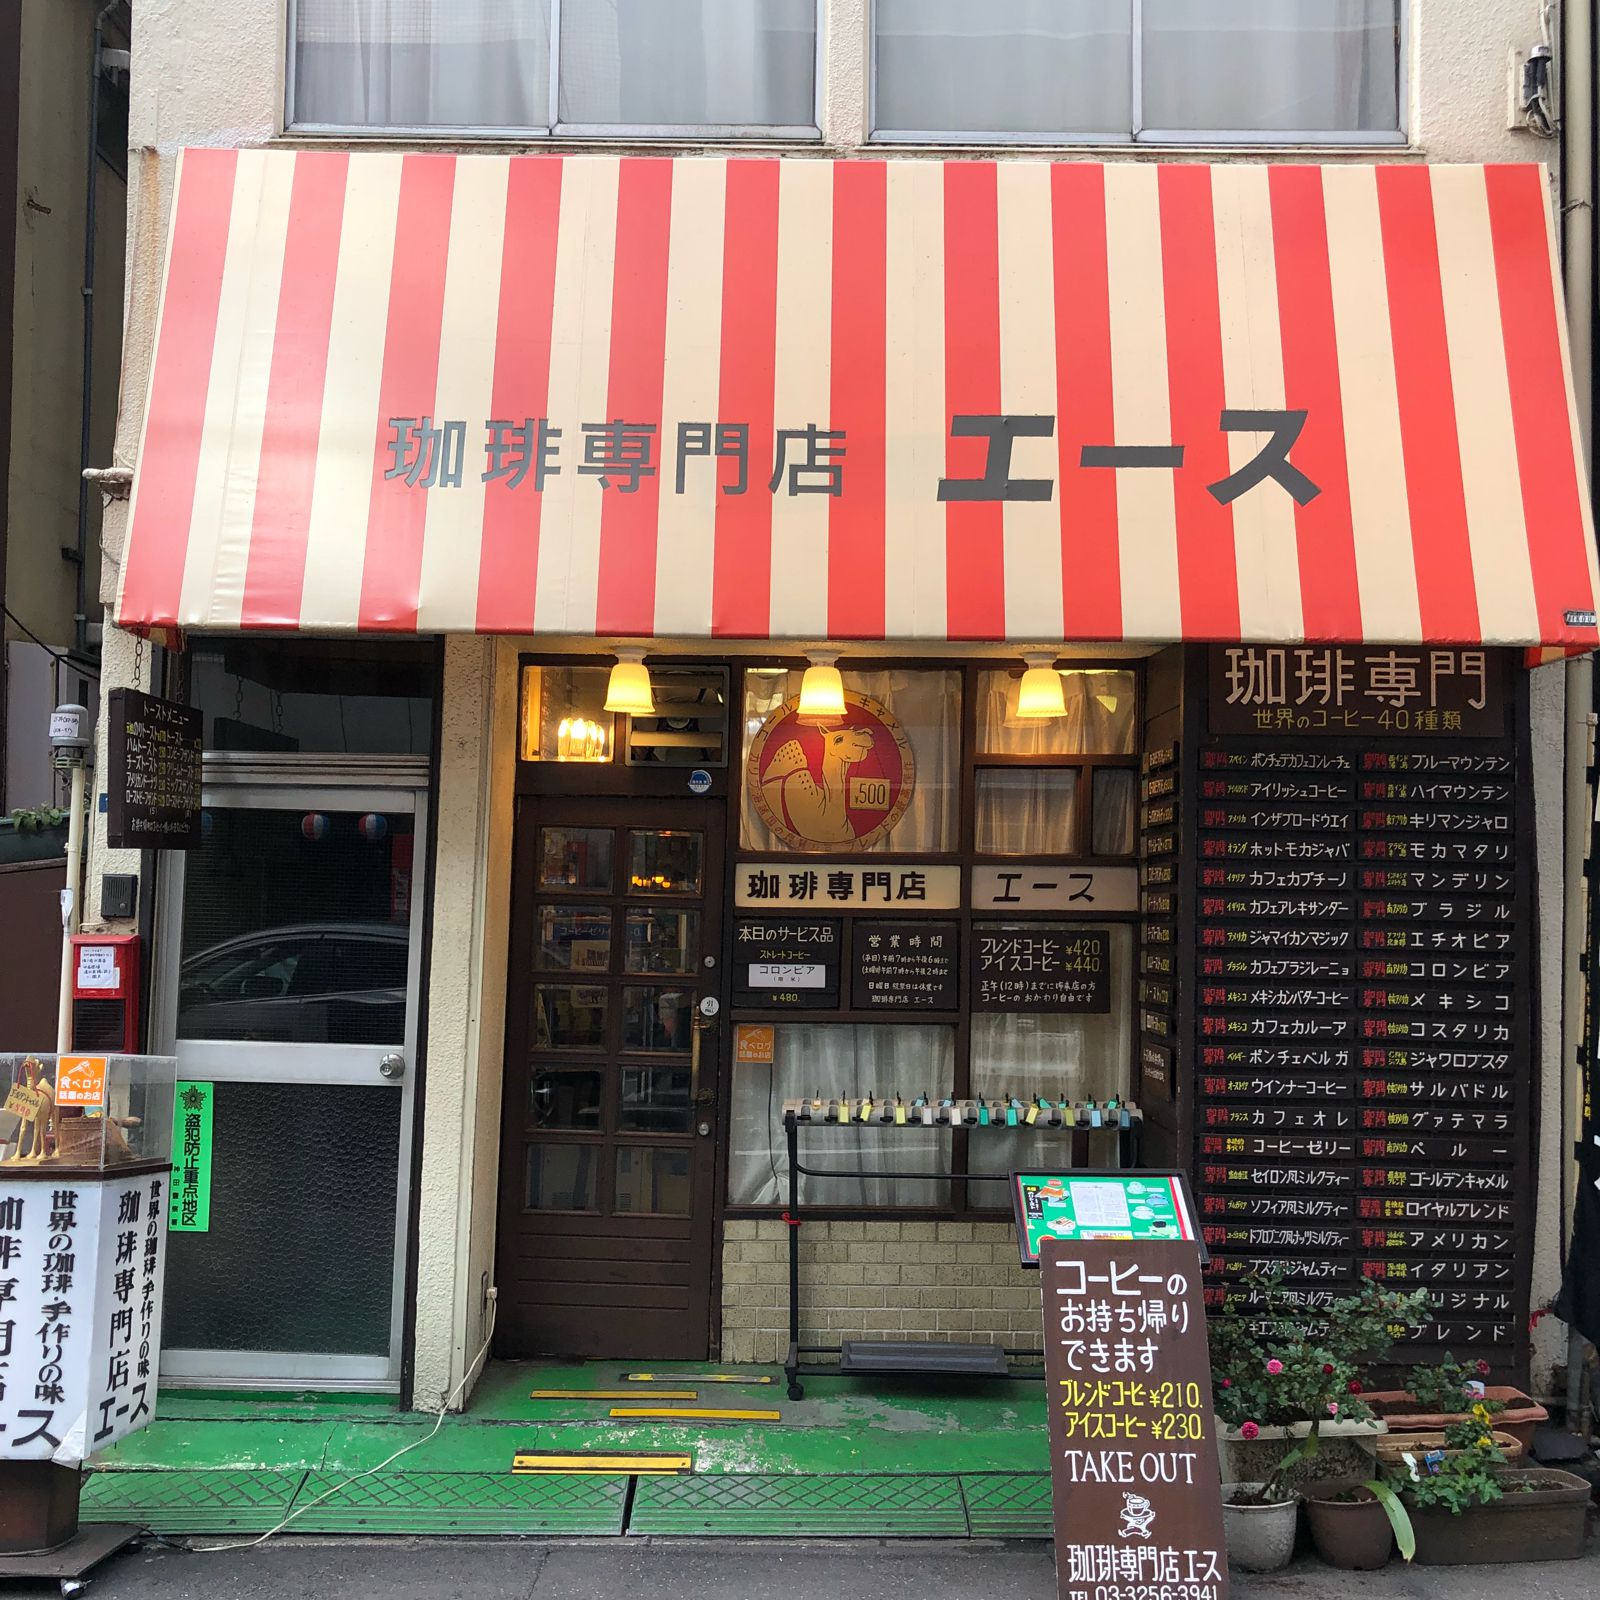 カフェでタイムスリップしよう 東京都内のレトロなおすすめ 純喫茶 12選 Retrip リトリップ